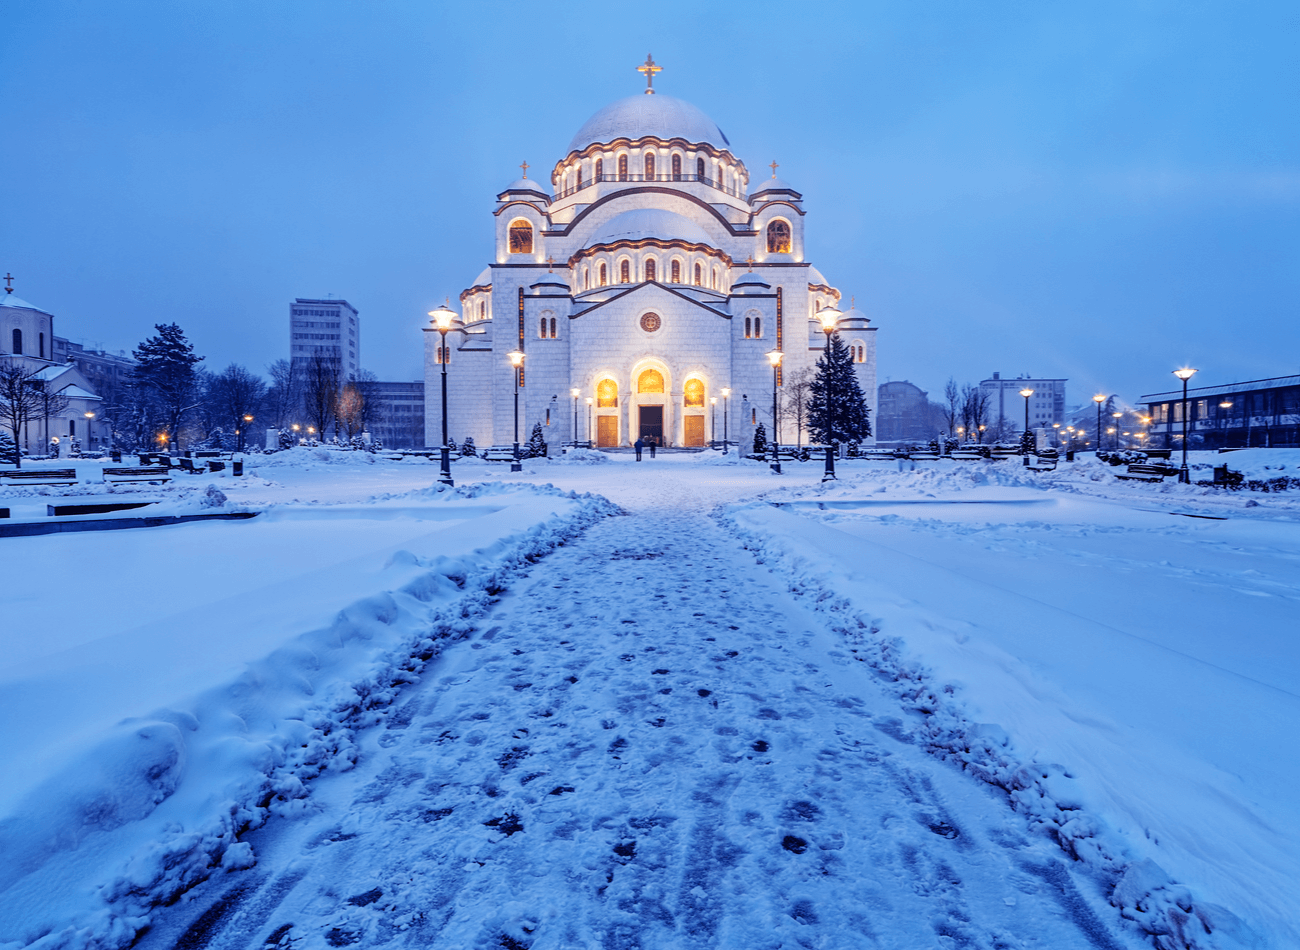 SIRBİSTAN-BELGRAD / Kış aylarında turizmin biraz azaldığı ve kalabalık olmayan şehrin güzelliğinin ortaya çıktığı bu zamanlarda Belgrad’ı ziyaretinden memnun kalabilirsiniz. Şehrin ucuz bir yer olması ise yılbaşı tatili için Belgrad’ı ziyaret etmek için bir sebep.